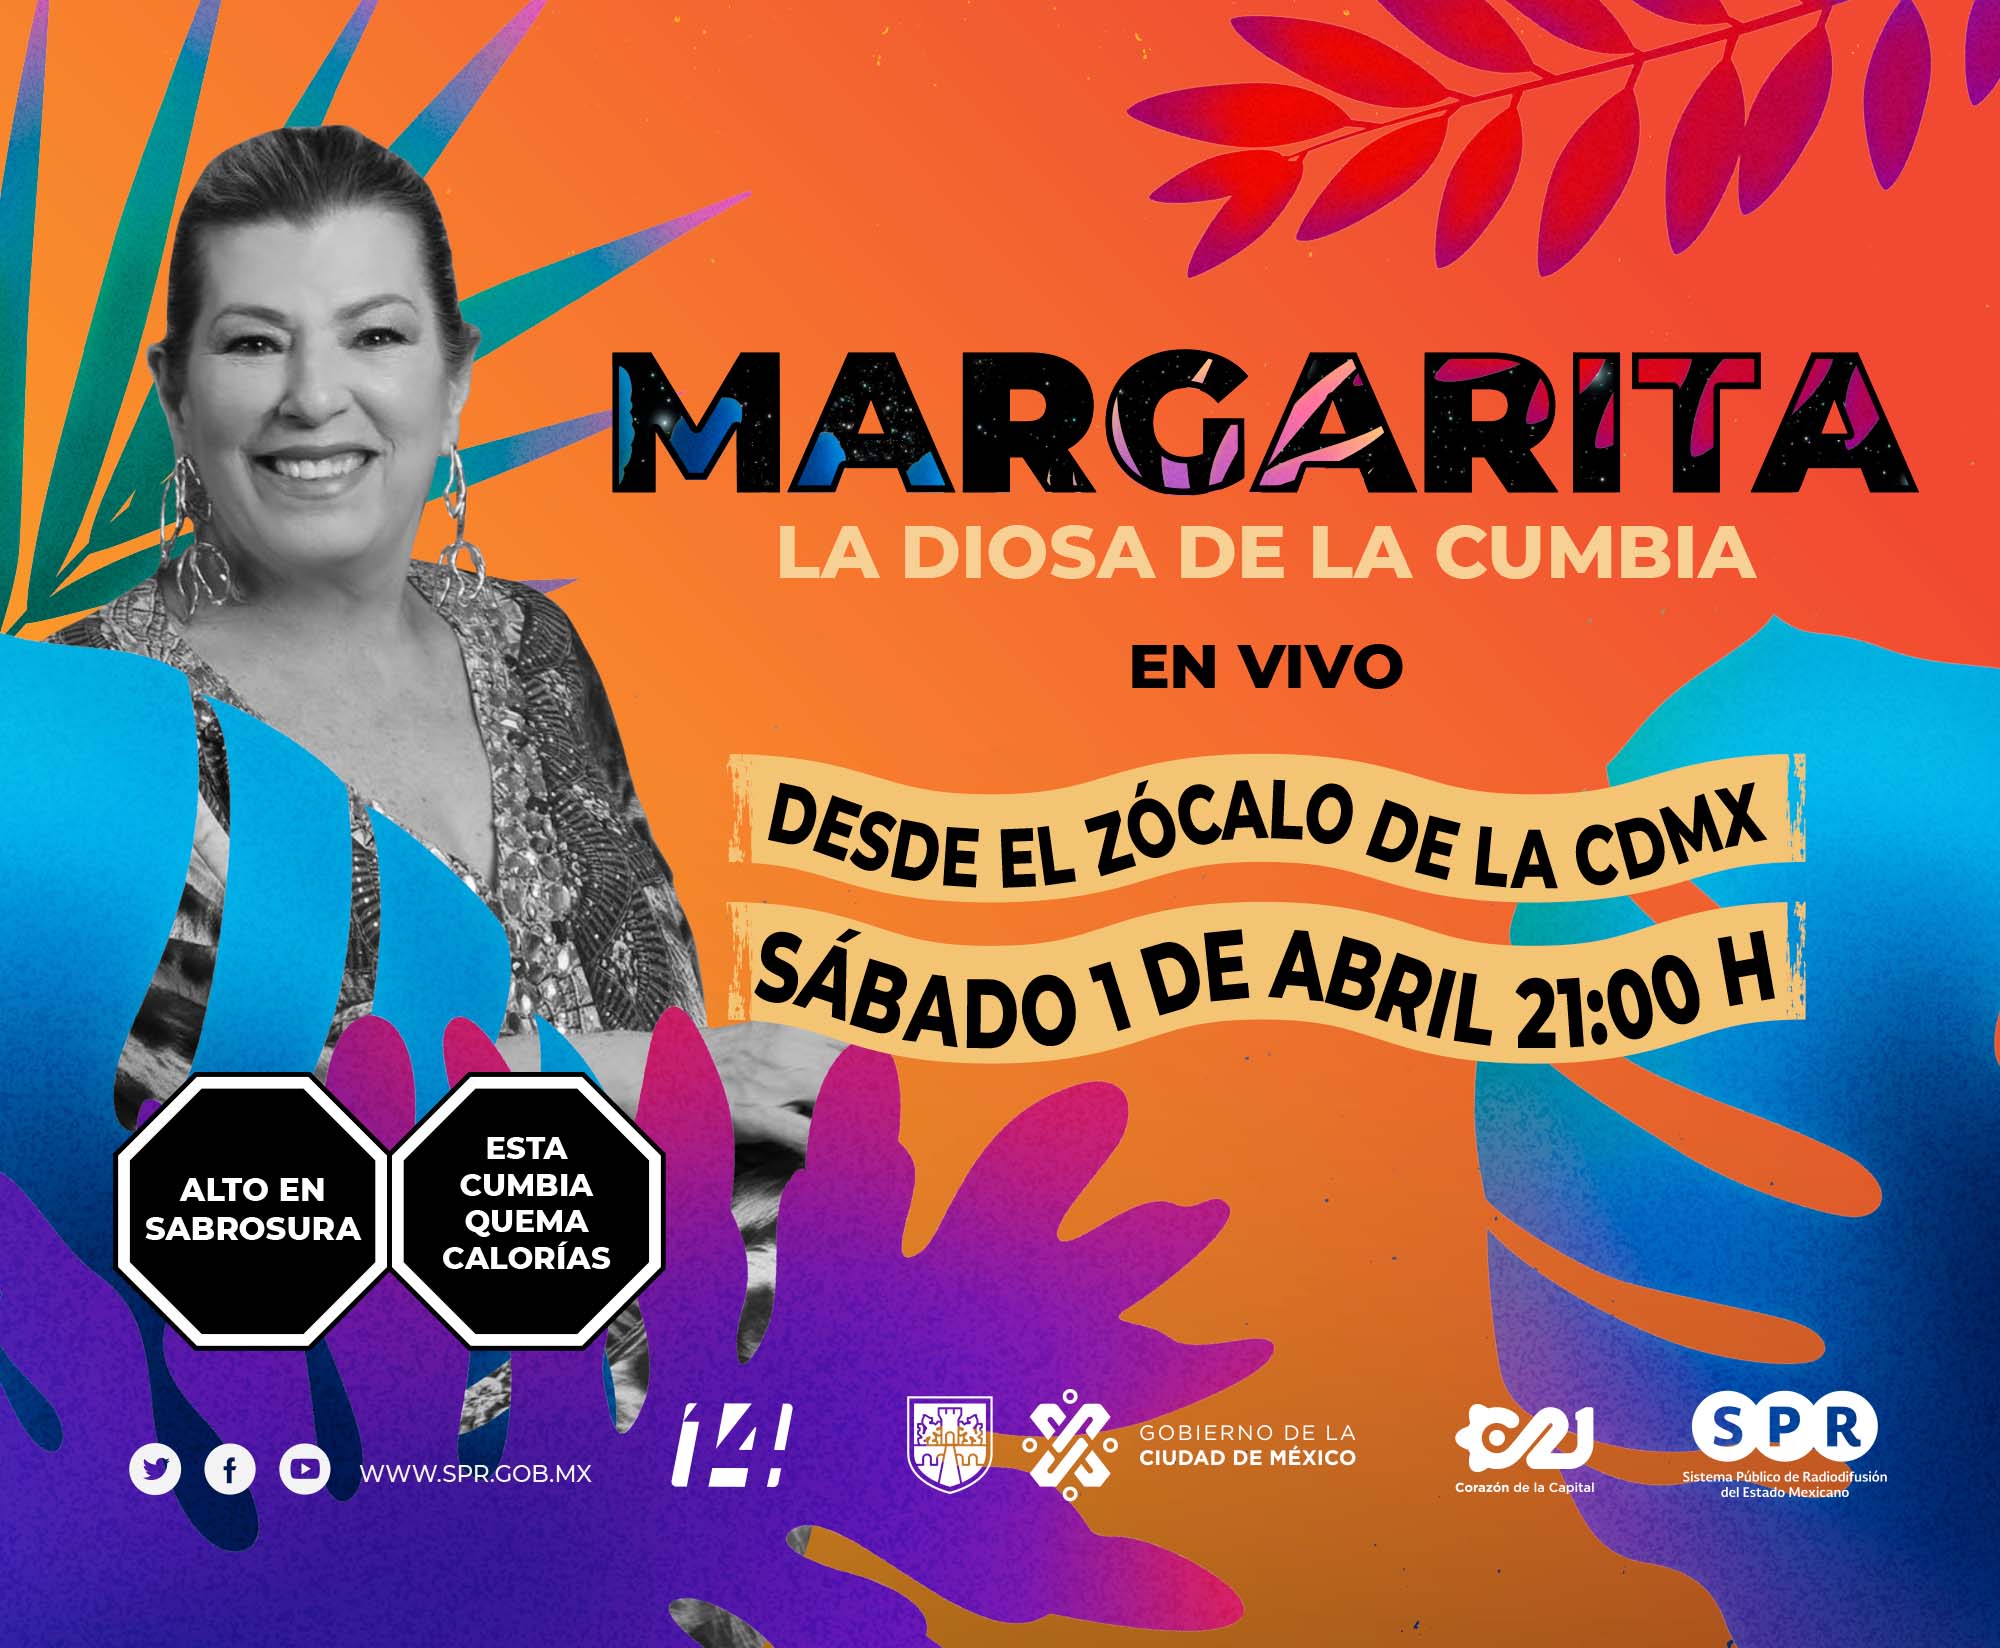 Canal Catorce del SPR, en colaboración con Capital 21, transmitirá en vivo el concierto de Margarita “La Diosa de la Cumbia”, el sábado 1 de abril